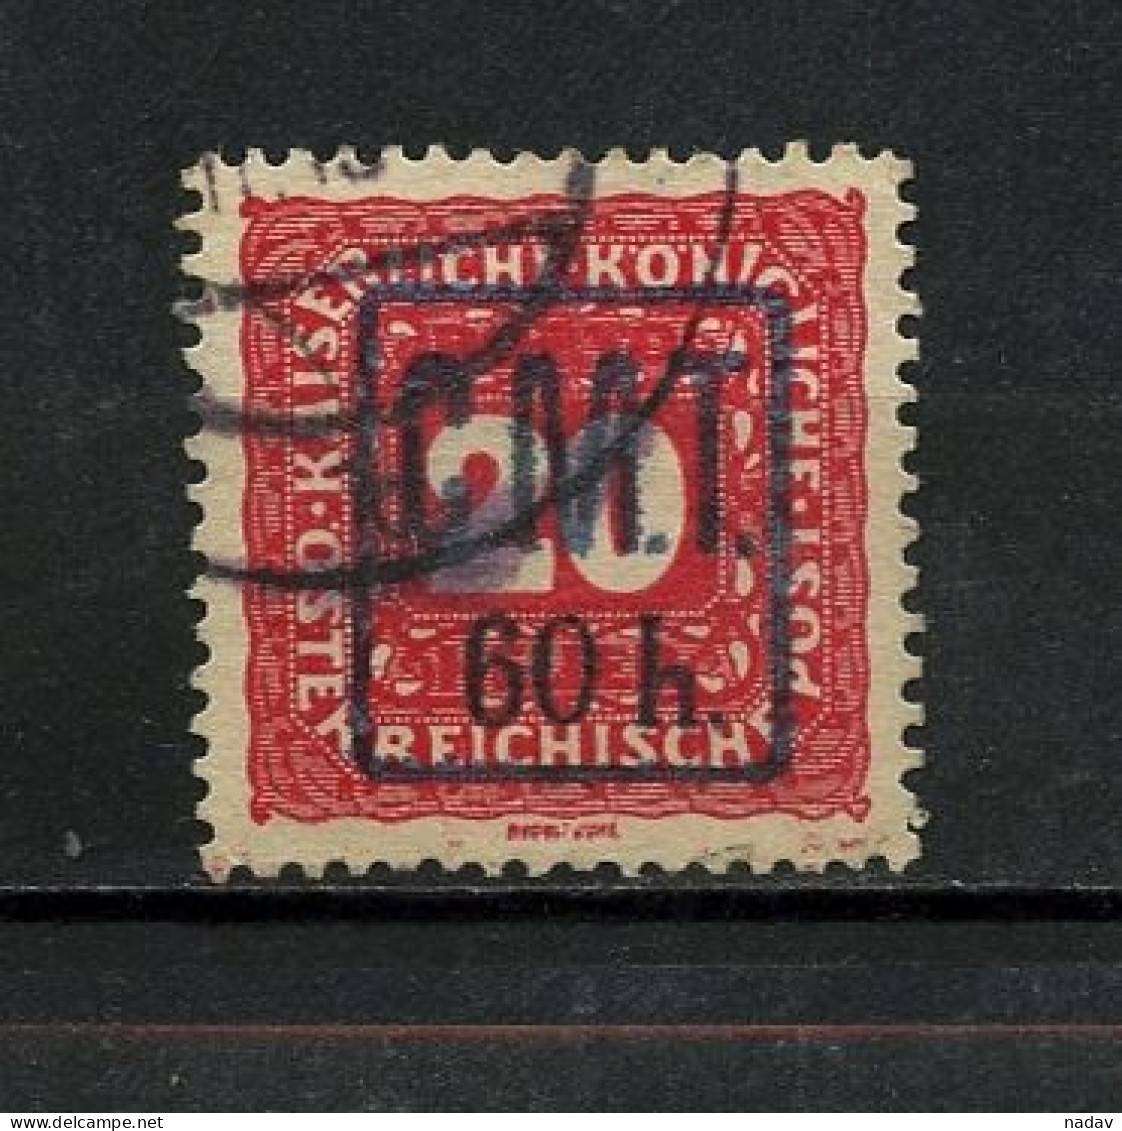 1919, Kolomea (Romanian Occupation), Postage Due Stamps -  Used - Ukraine & West Ukraine